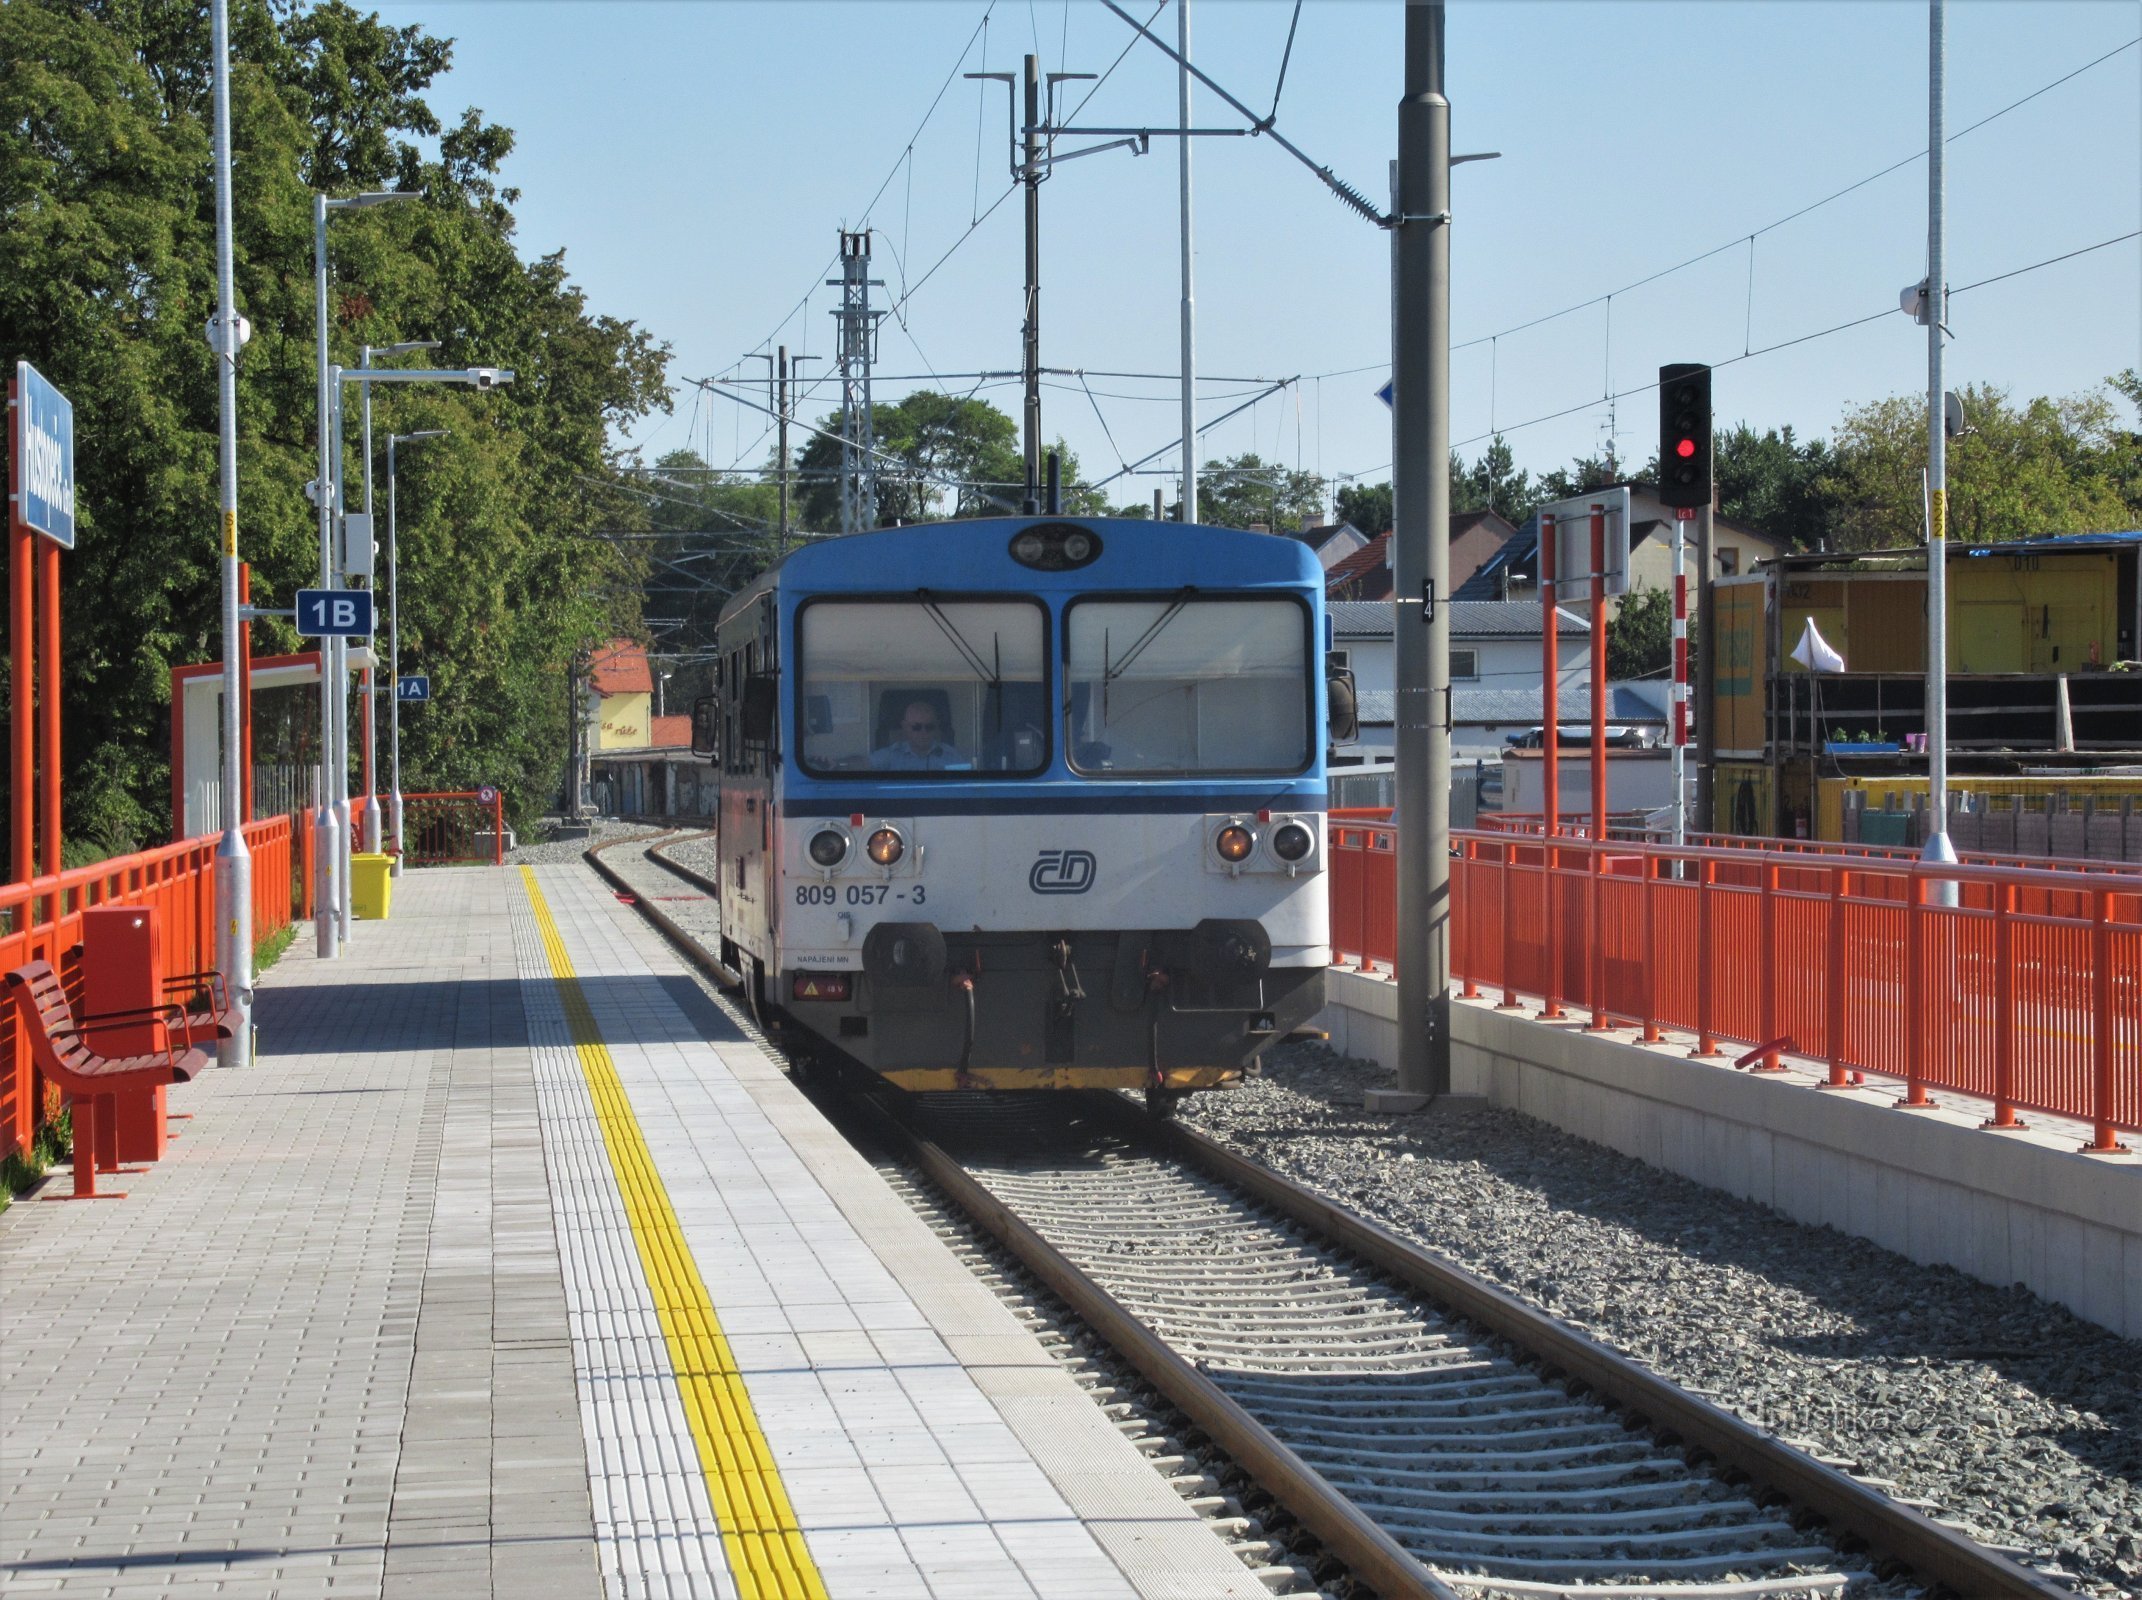 Foto histórica da estação reconstruída ainda com um trem a motor do início do outono de 2020